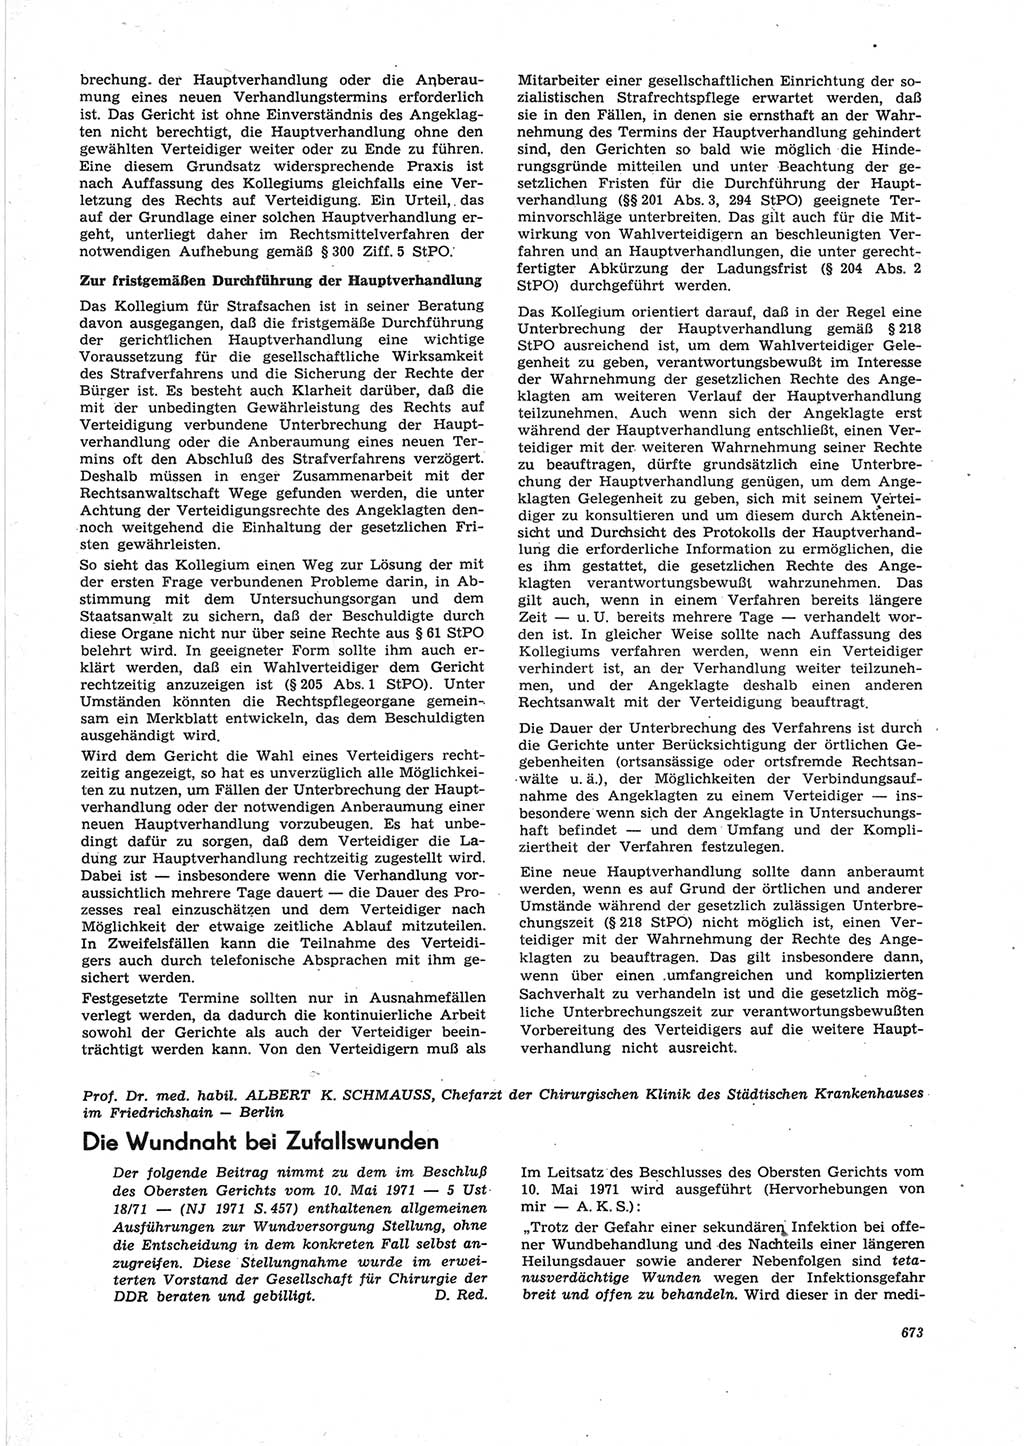 Neue Justiz (NJ), Zeitschrift für Recht und Rechtswissenschaft [Deutsche Demokratische Republik (DDR)], 25. Jahrgang 1971, Seite 673 (NJ DDR 1971, S. 673)